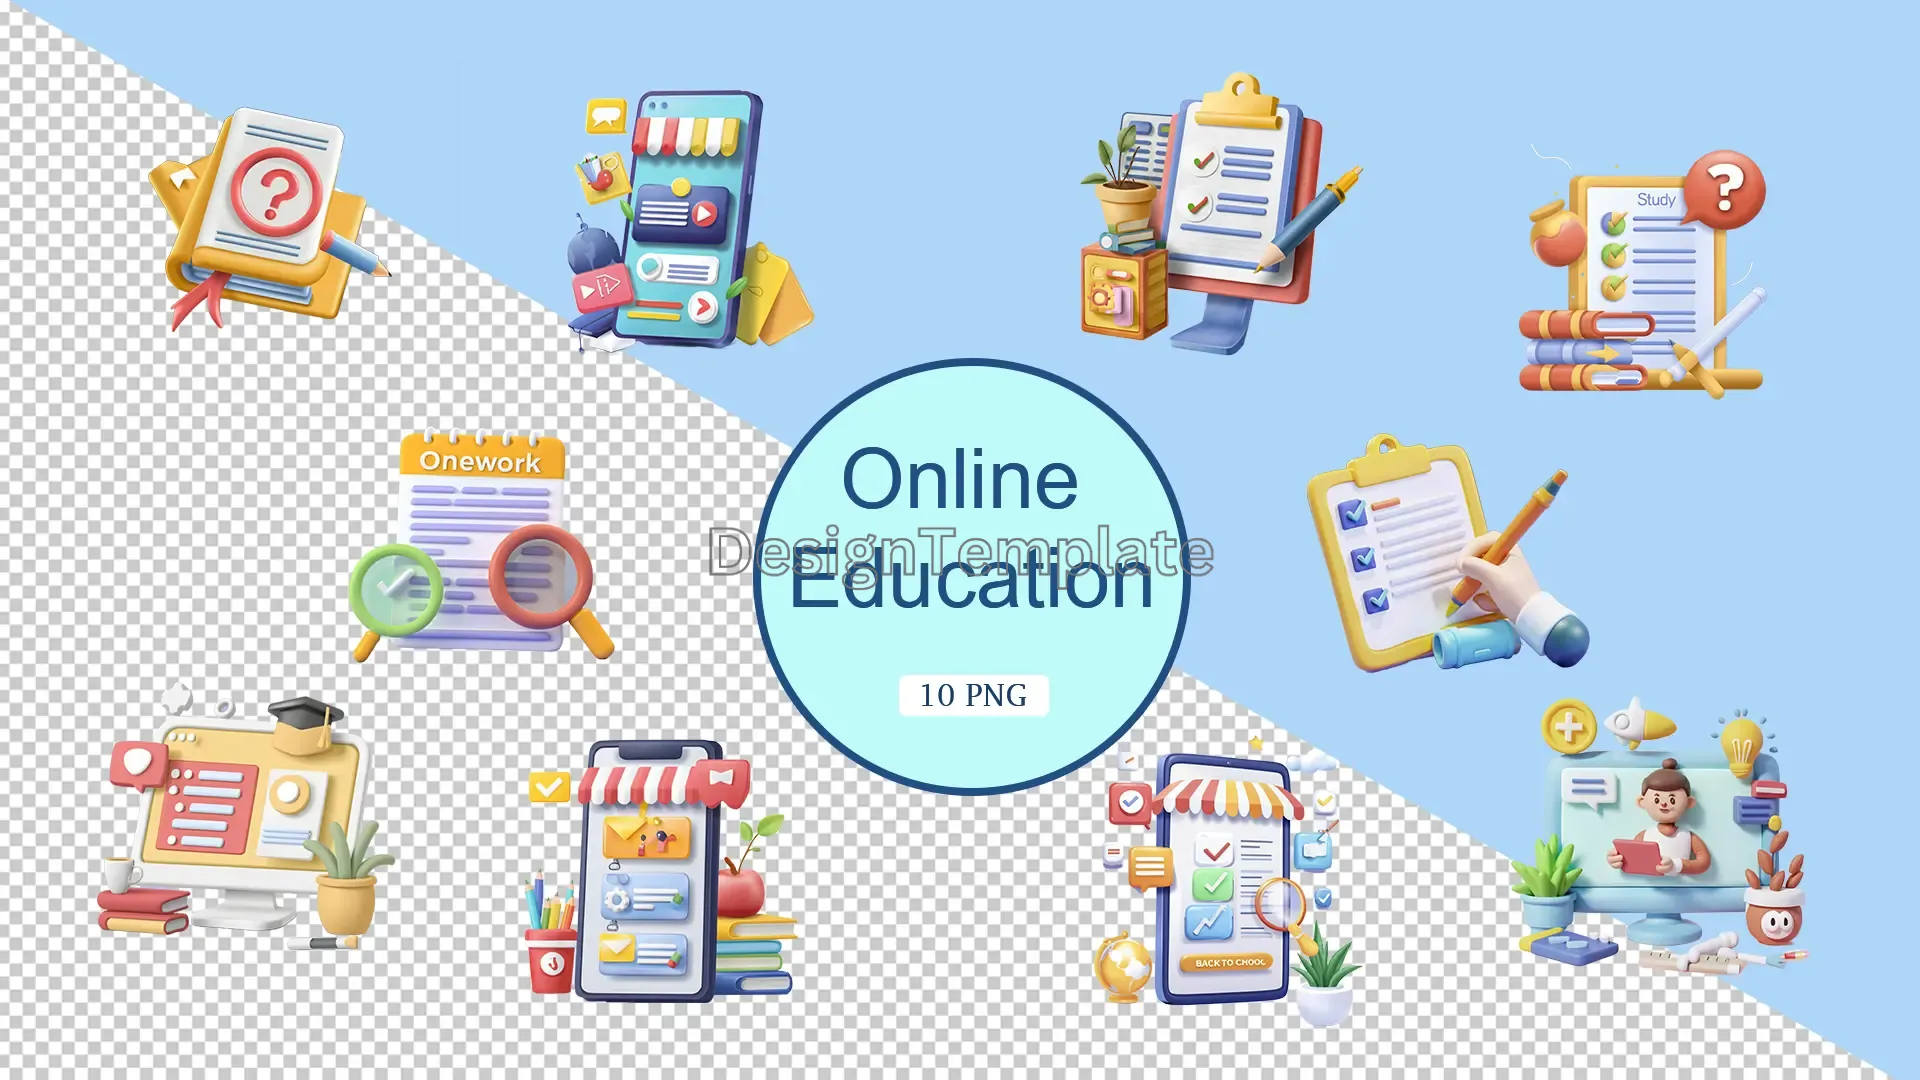 Online Education 3D Elements Pack